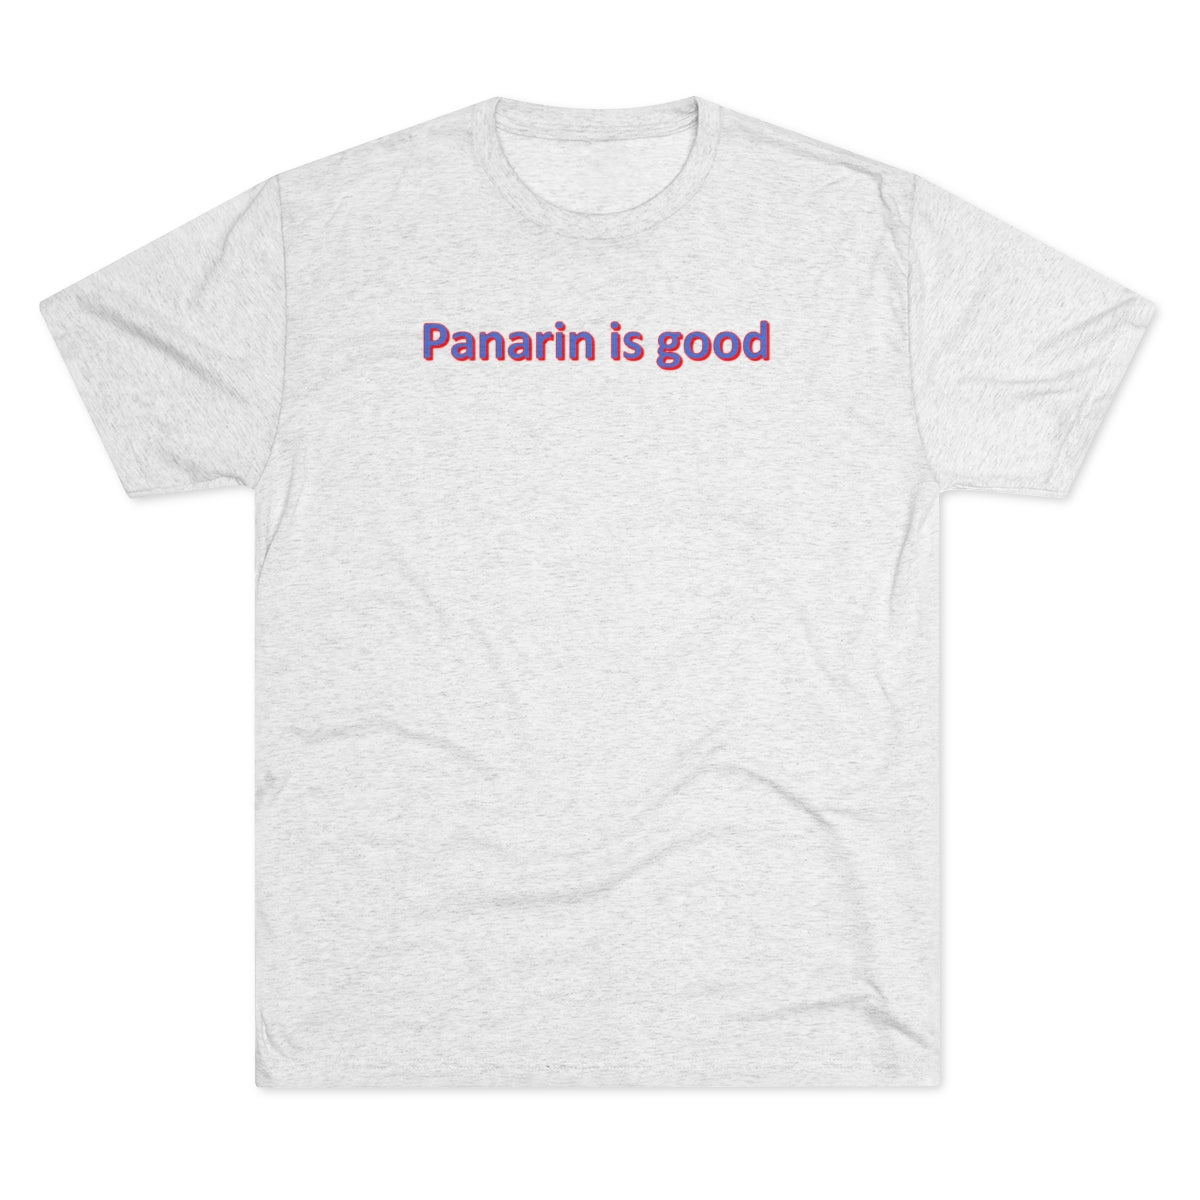 Panarin is good Shirt - IsGoodBrand